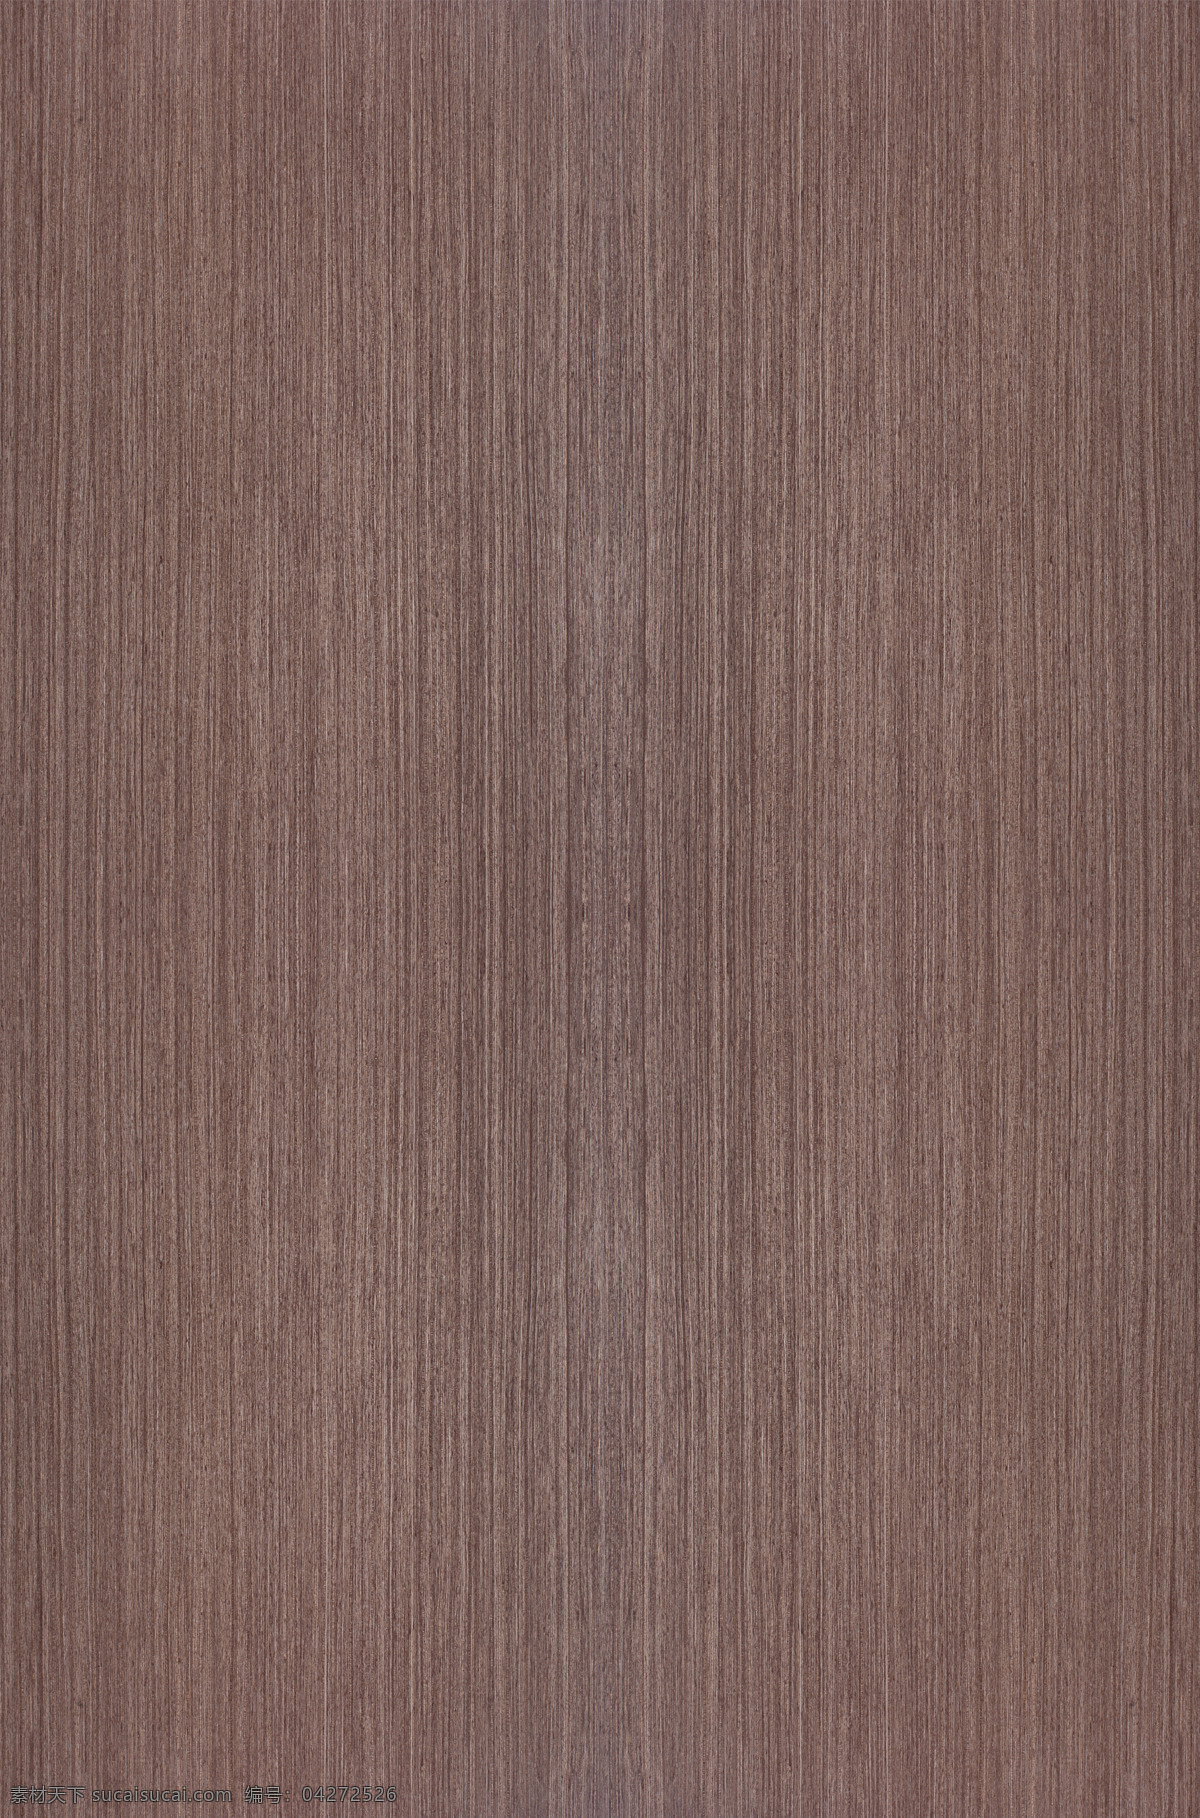 木纹贴图 典娜银丝 高清贴图 无缝贴图 3d贴图 3d设计 其他模型